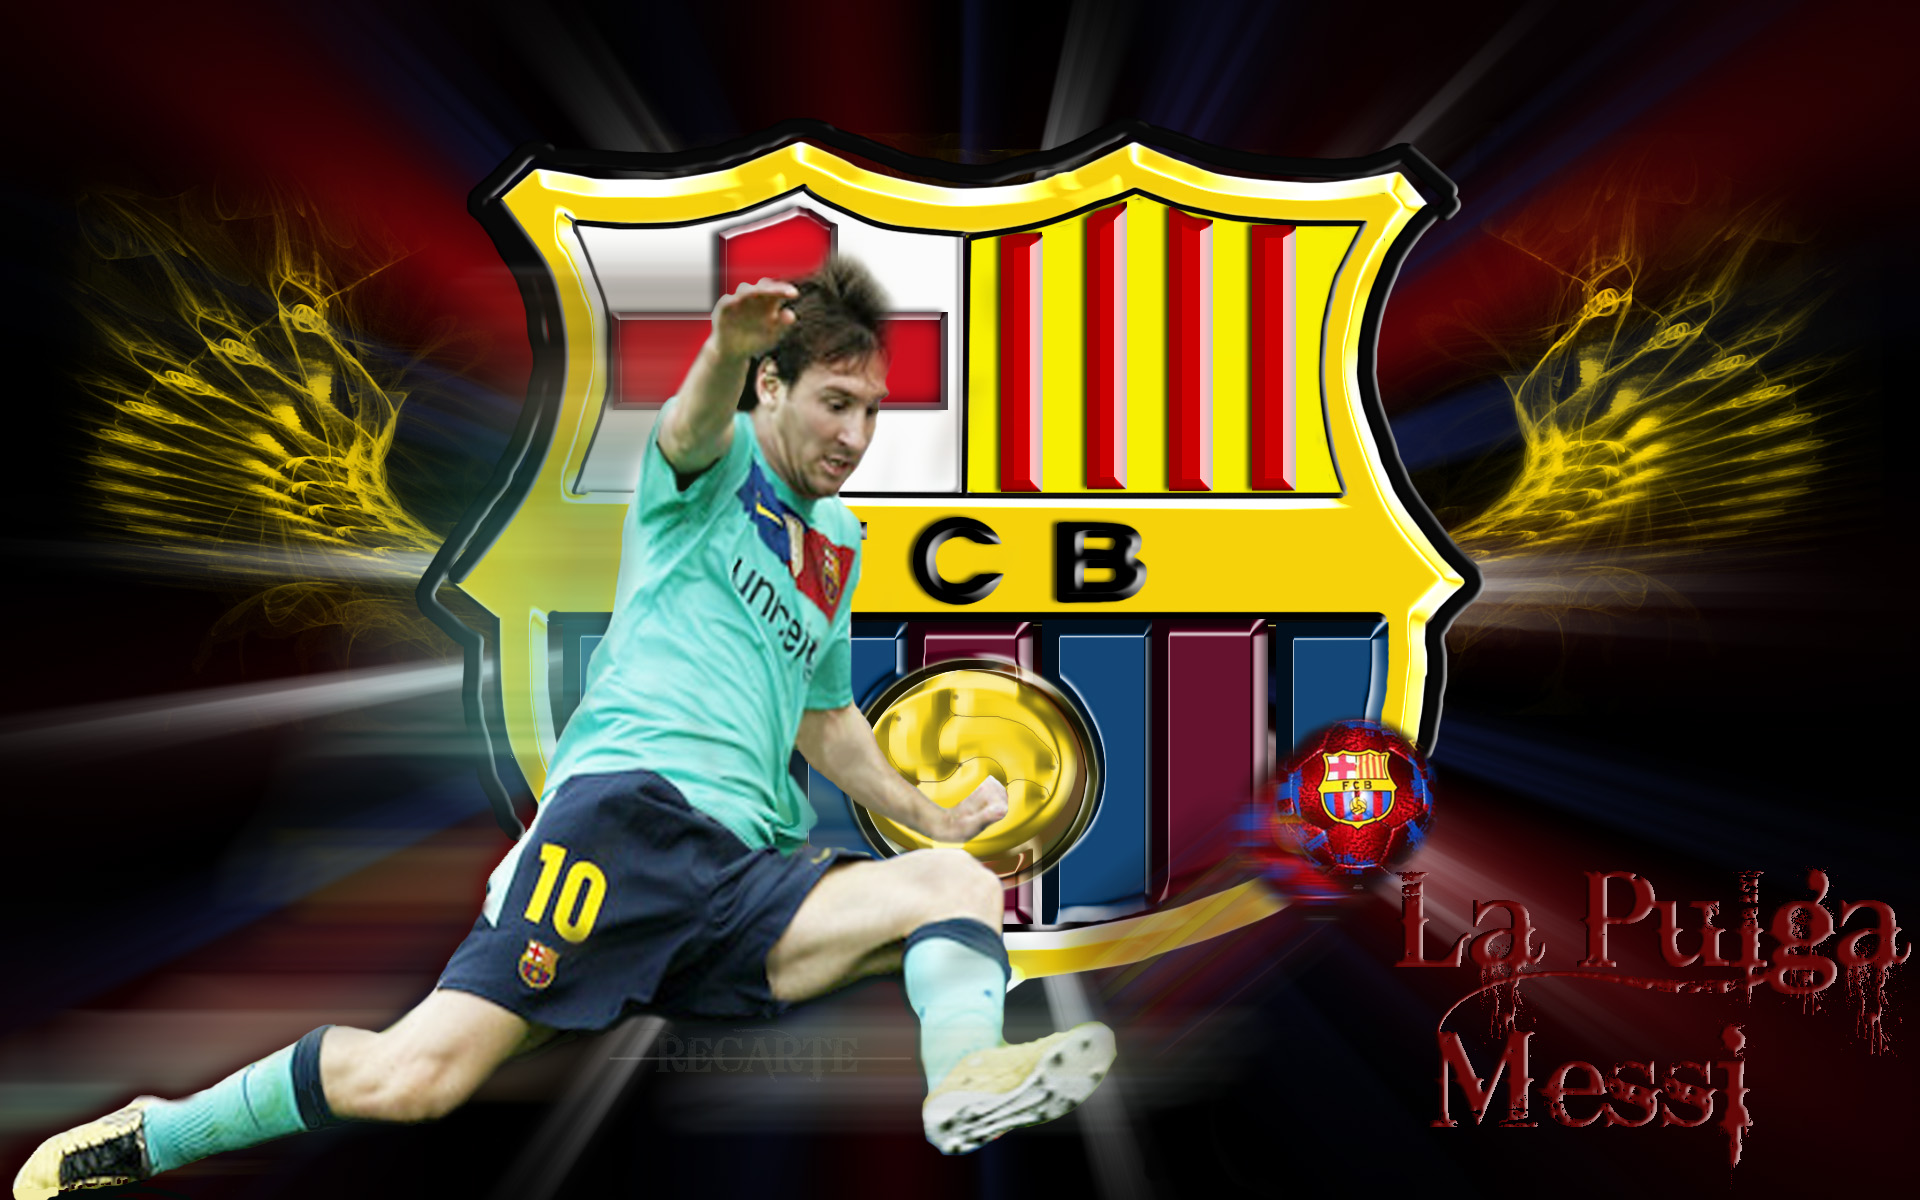 Messi Wallpaper fcb kick